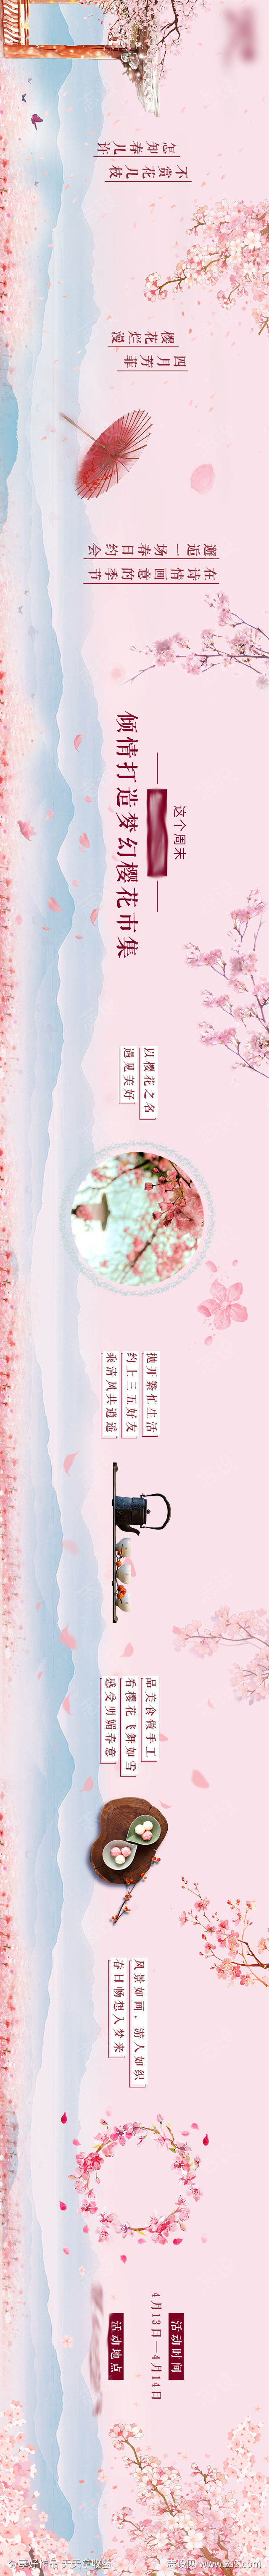 中式樱花长图推文